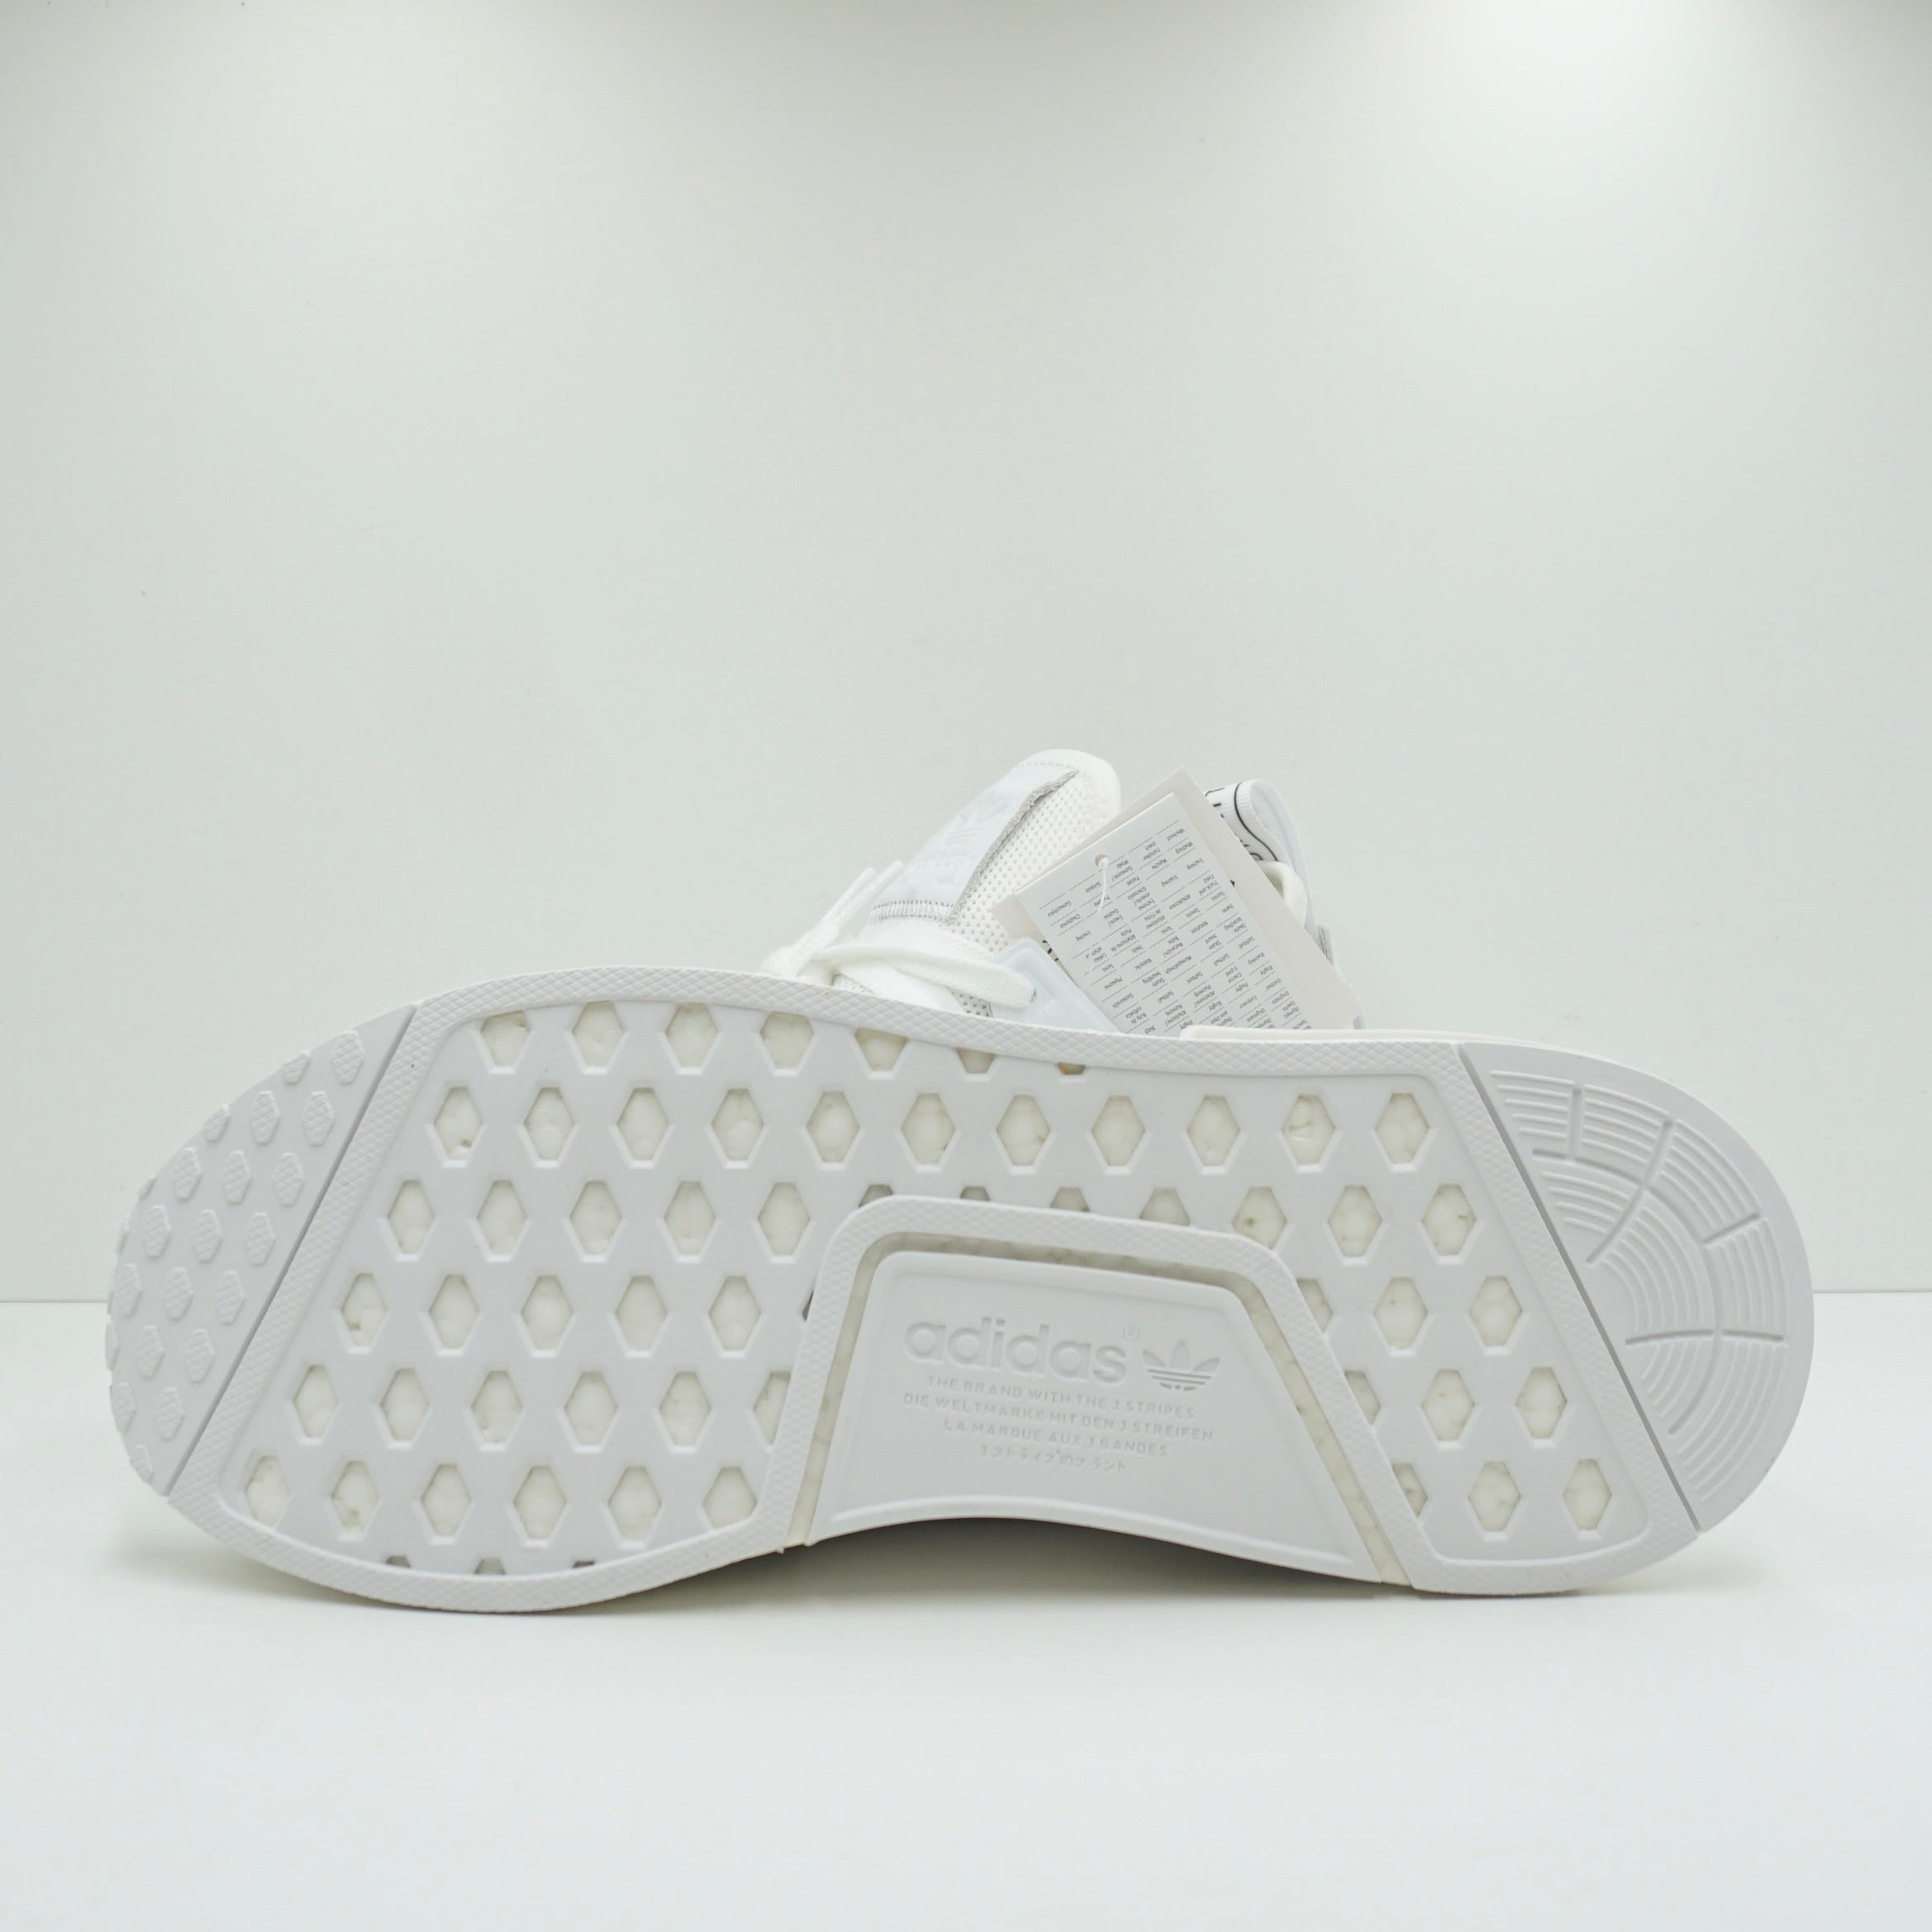 Adidas NMD XR1 Triple White (2017)